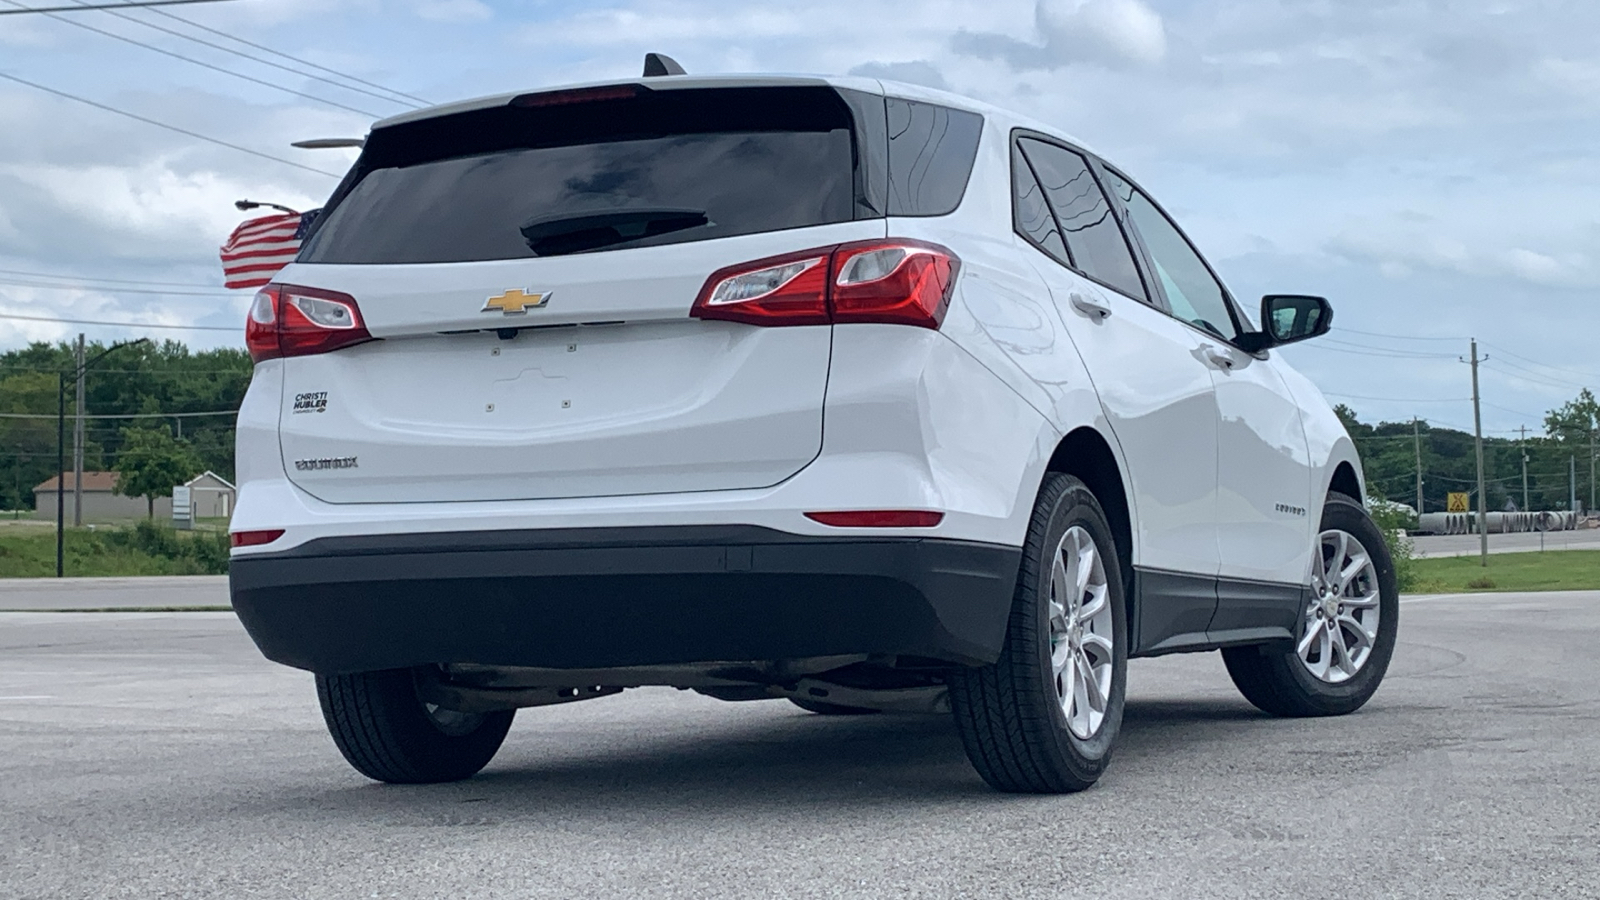 2019 Chevrolet Equinox LS 4